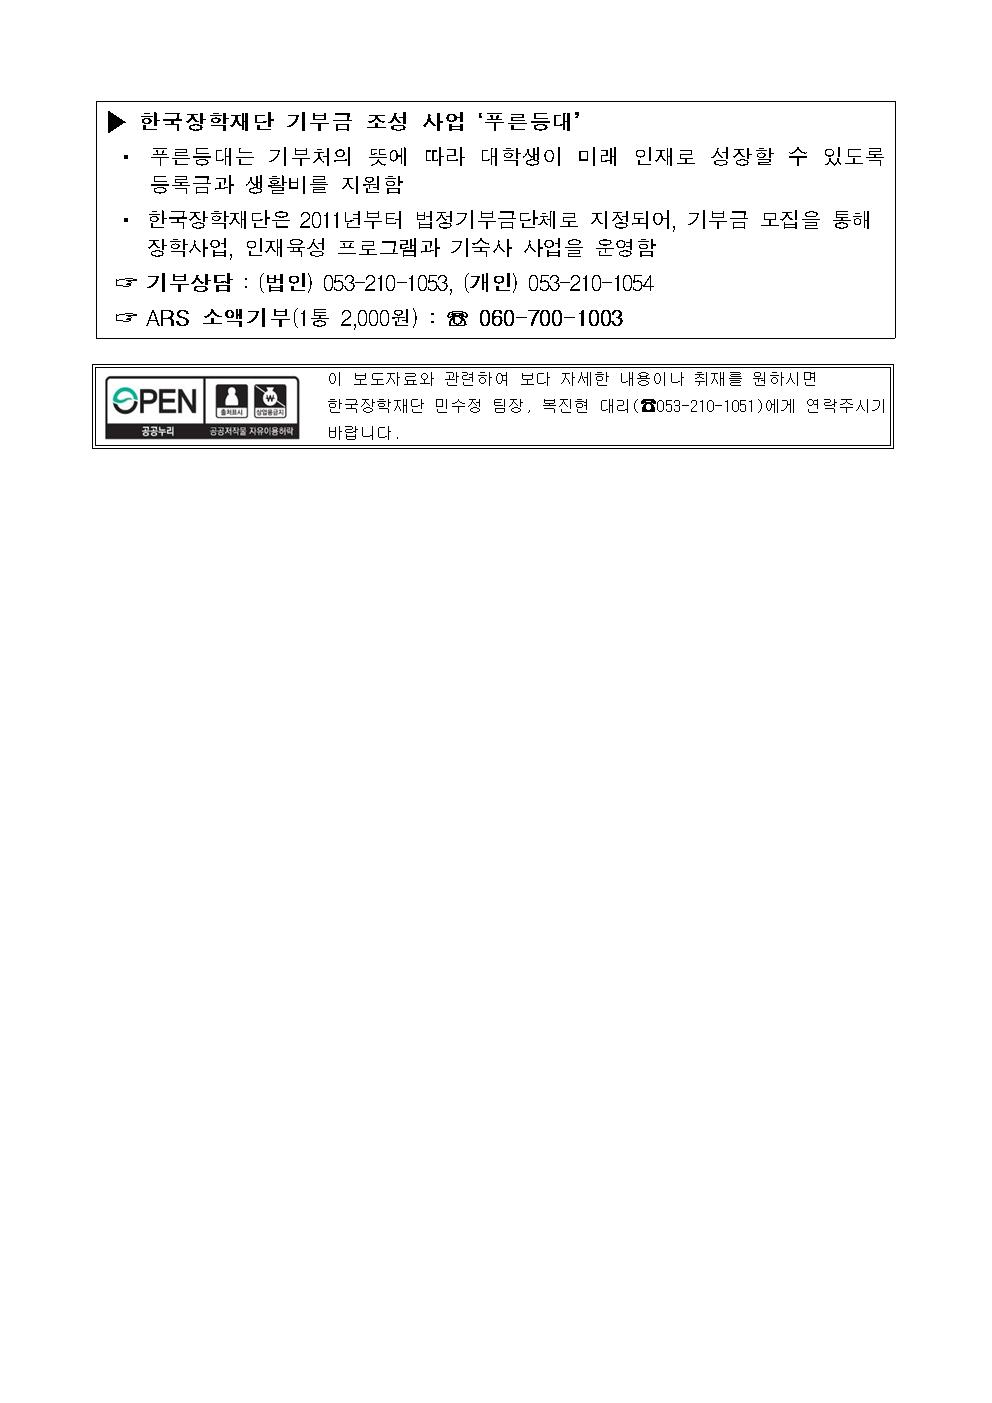 07-23(목)[보도자료] 한국장학재단 푸른등대 KT&G 기부장학금 기탁식 개최003.jpg